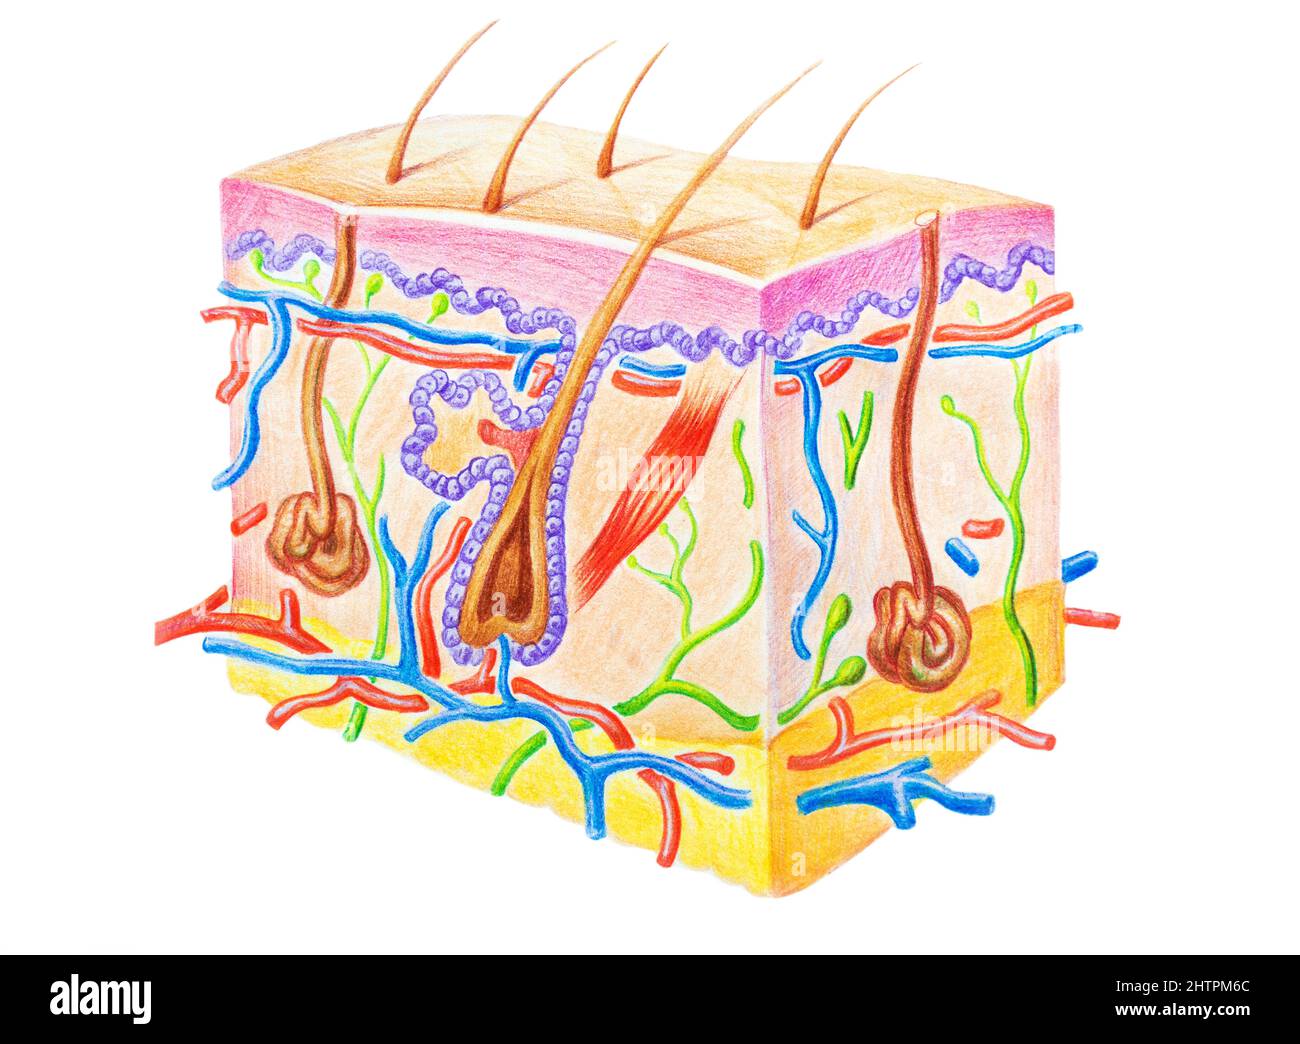 Structure de la peau humaine montrant les couches de la peau, les cheveux et la glande sueur. Illustration dessinée à la main avec crayons de couleur Banque D'Images